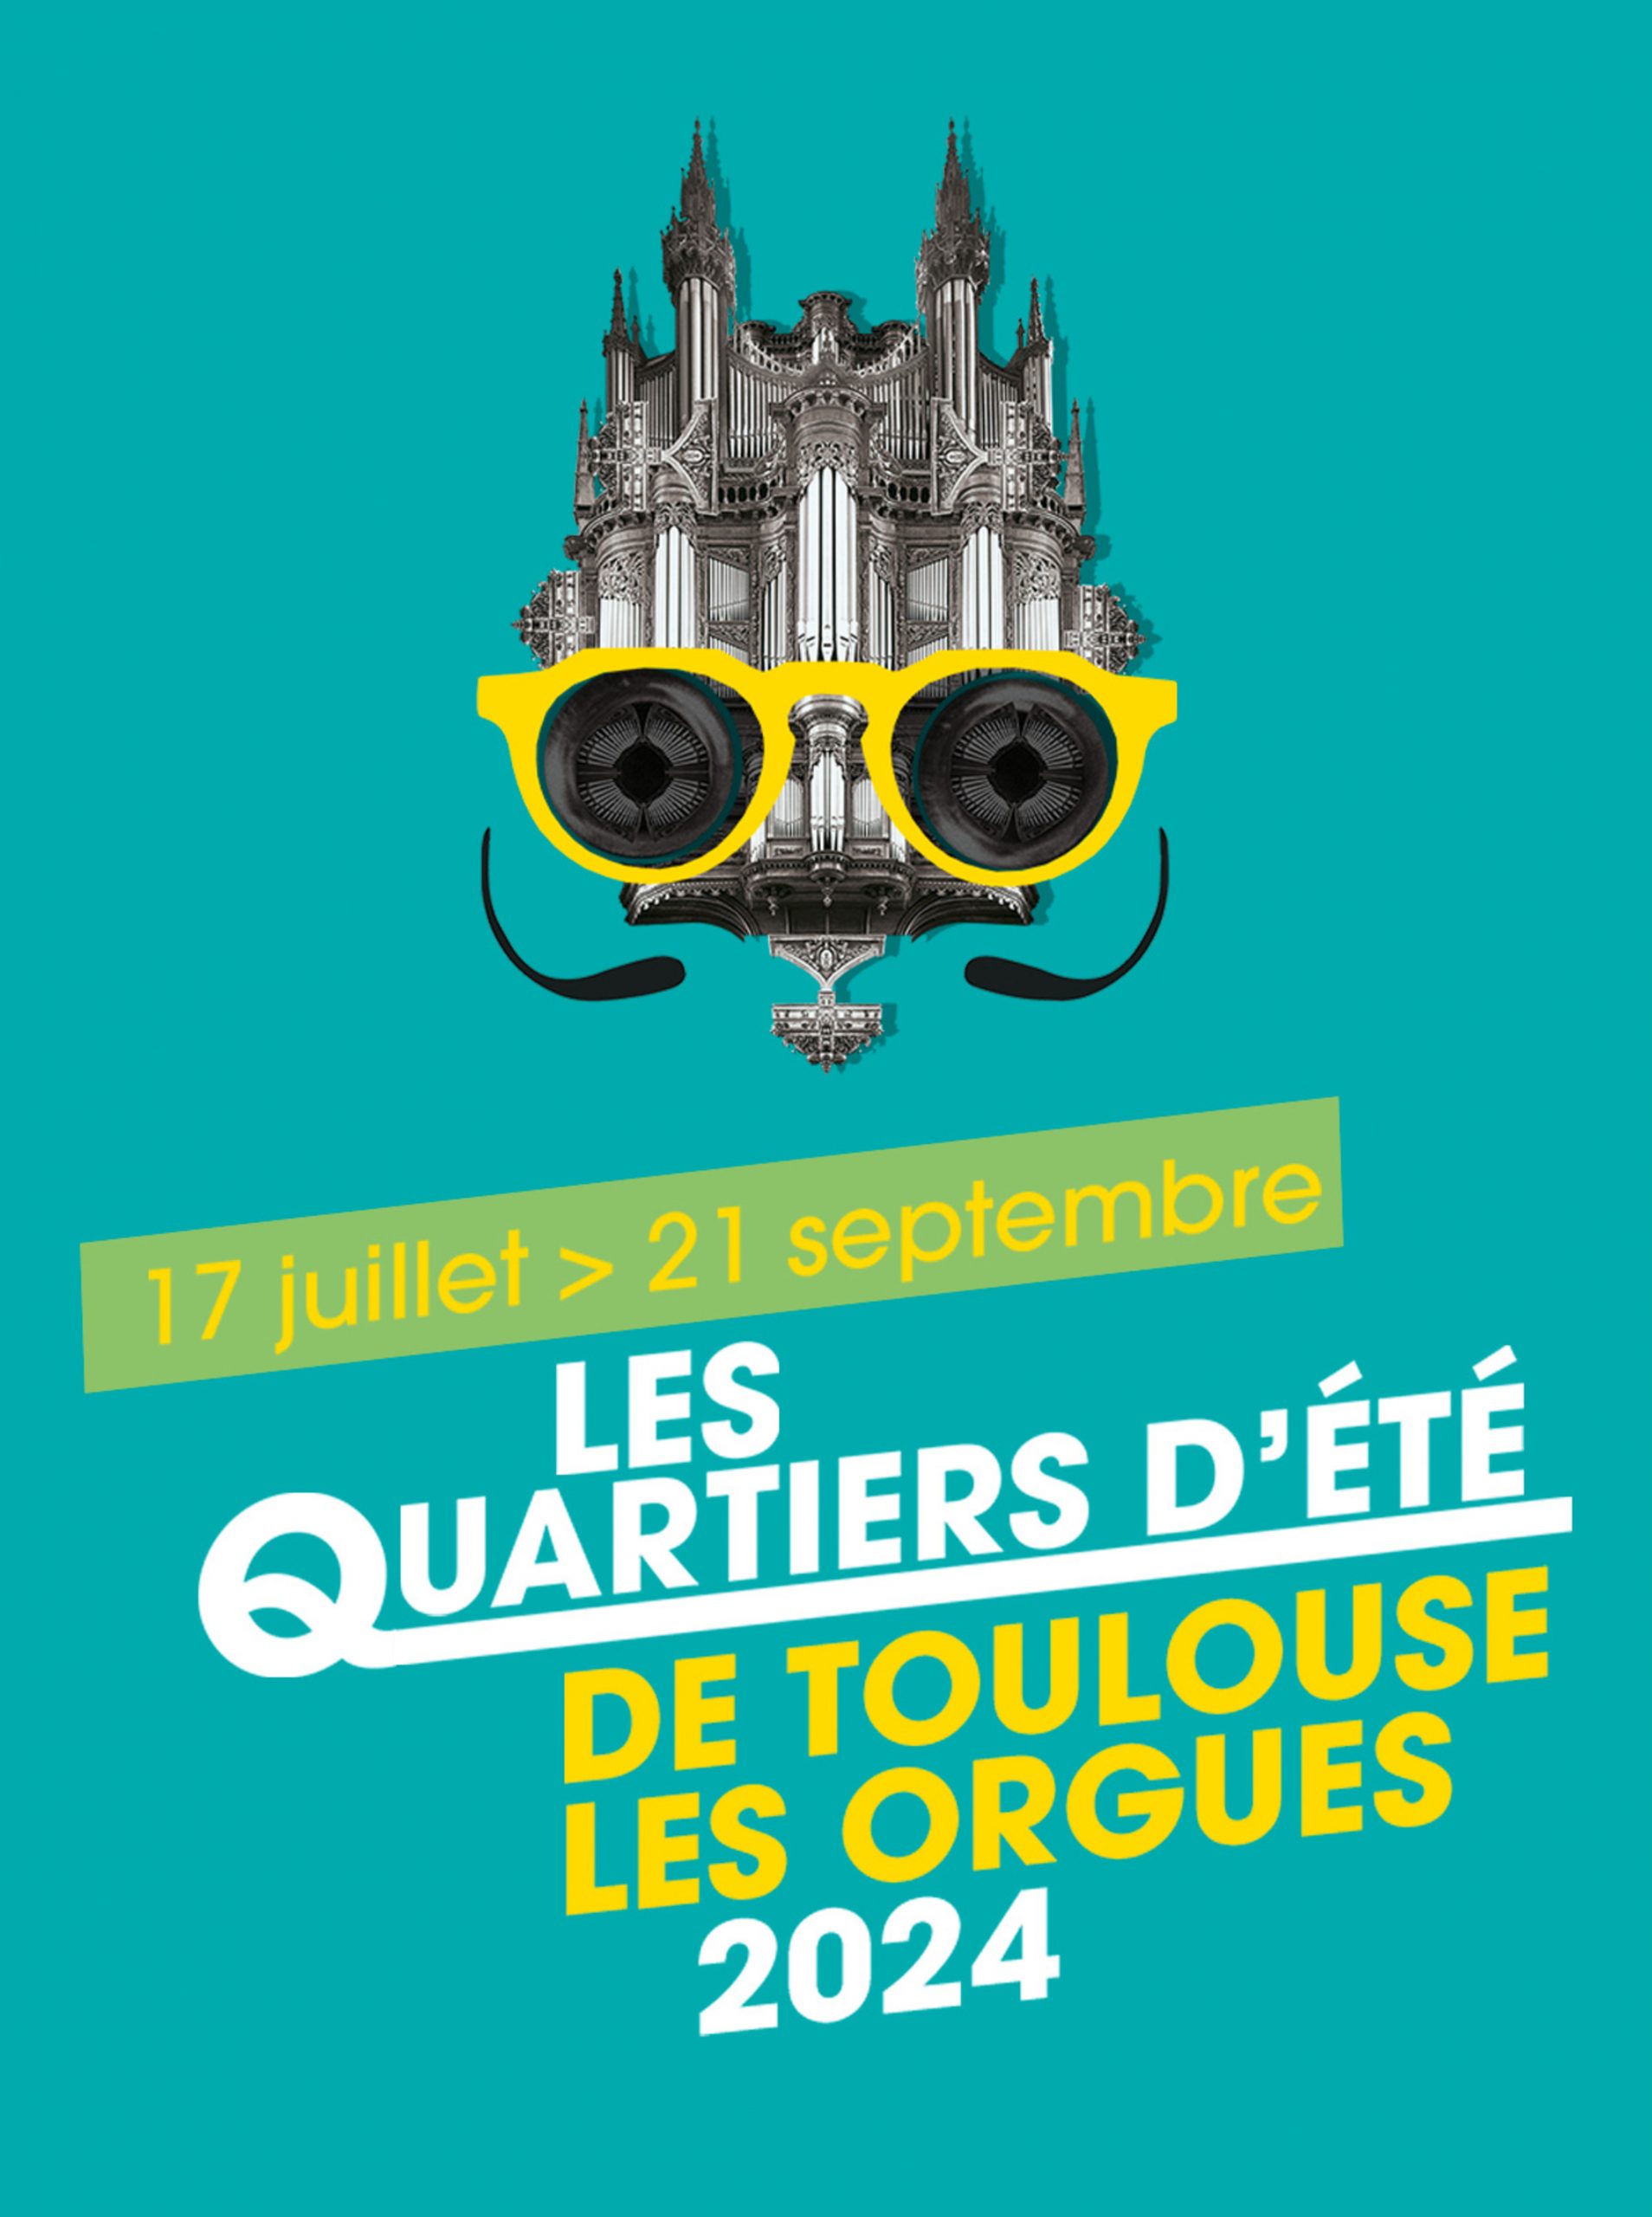 Toulouse Les Orgues Les Quartiers D'été